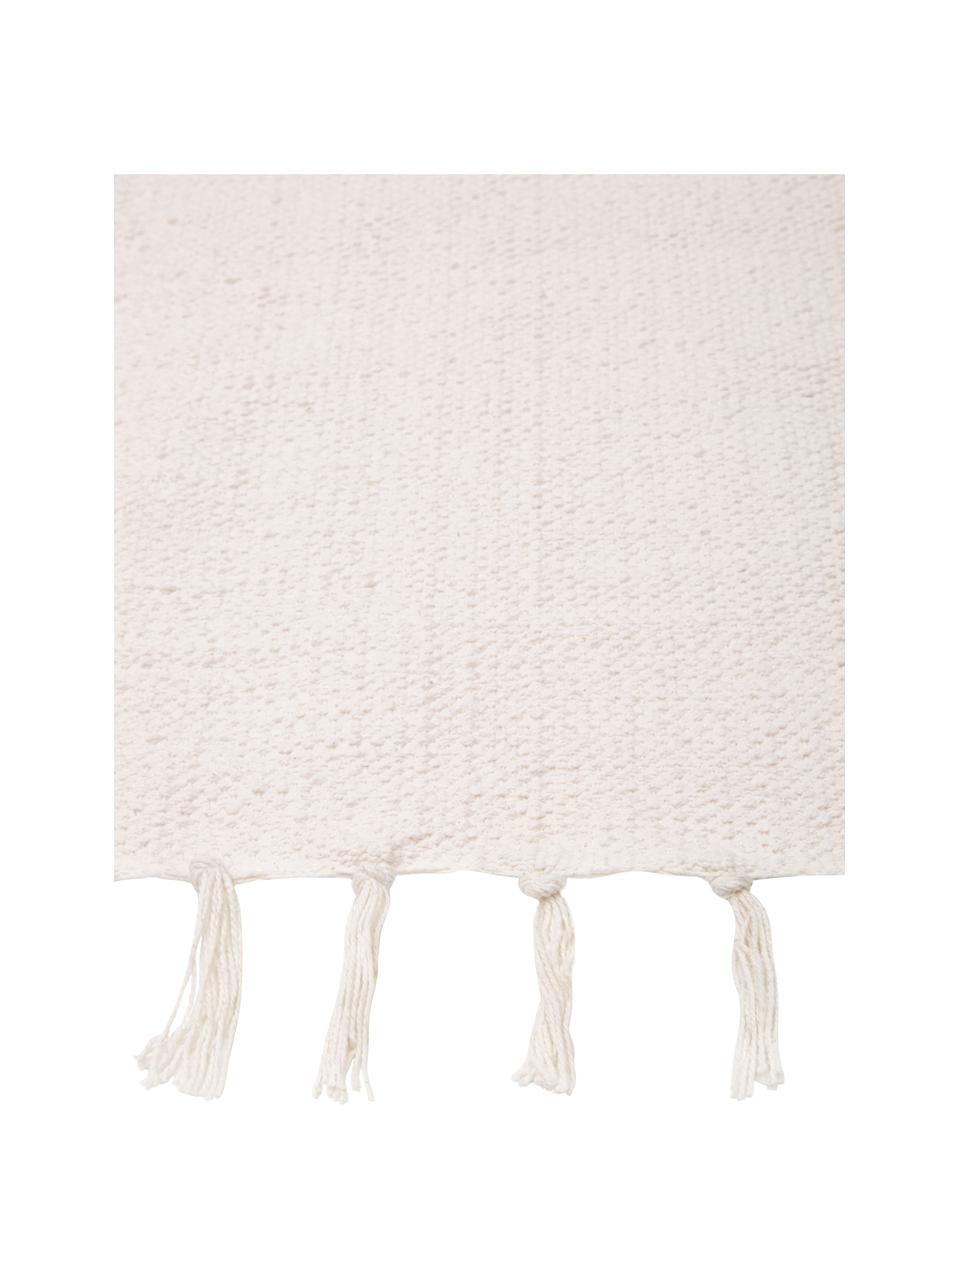 Tappeto in cotone sottile tessuto a mano bianco sporco Agneta, 100% cotone, Bianco, Larg. 70 x Lung. 140 cm (taglia XS)